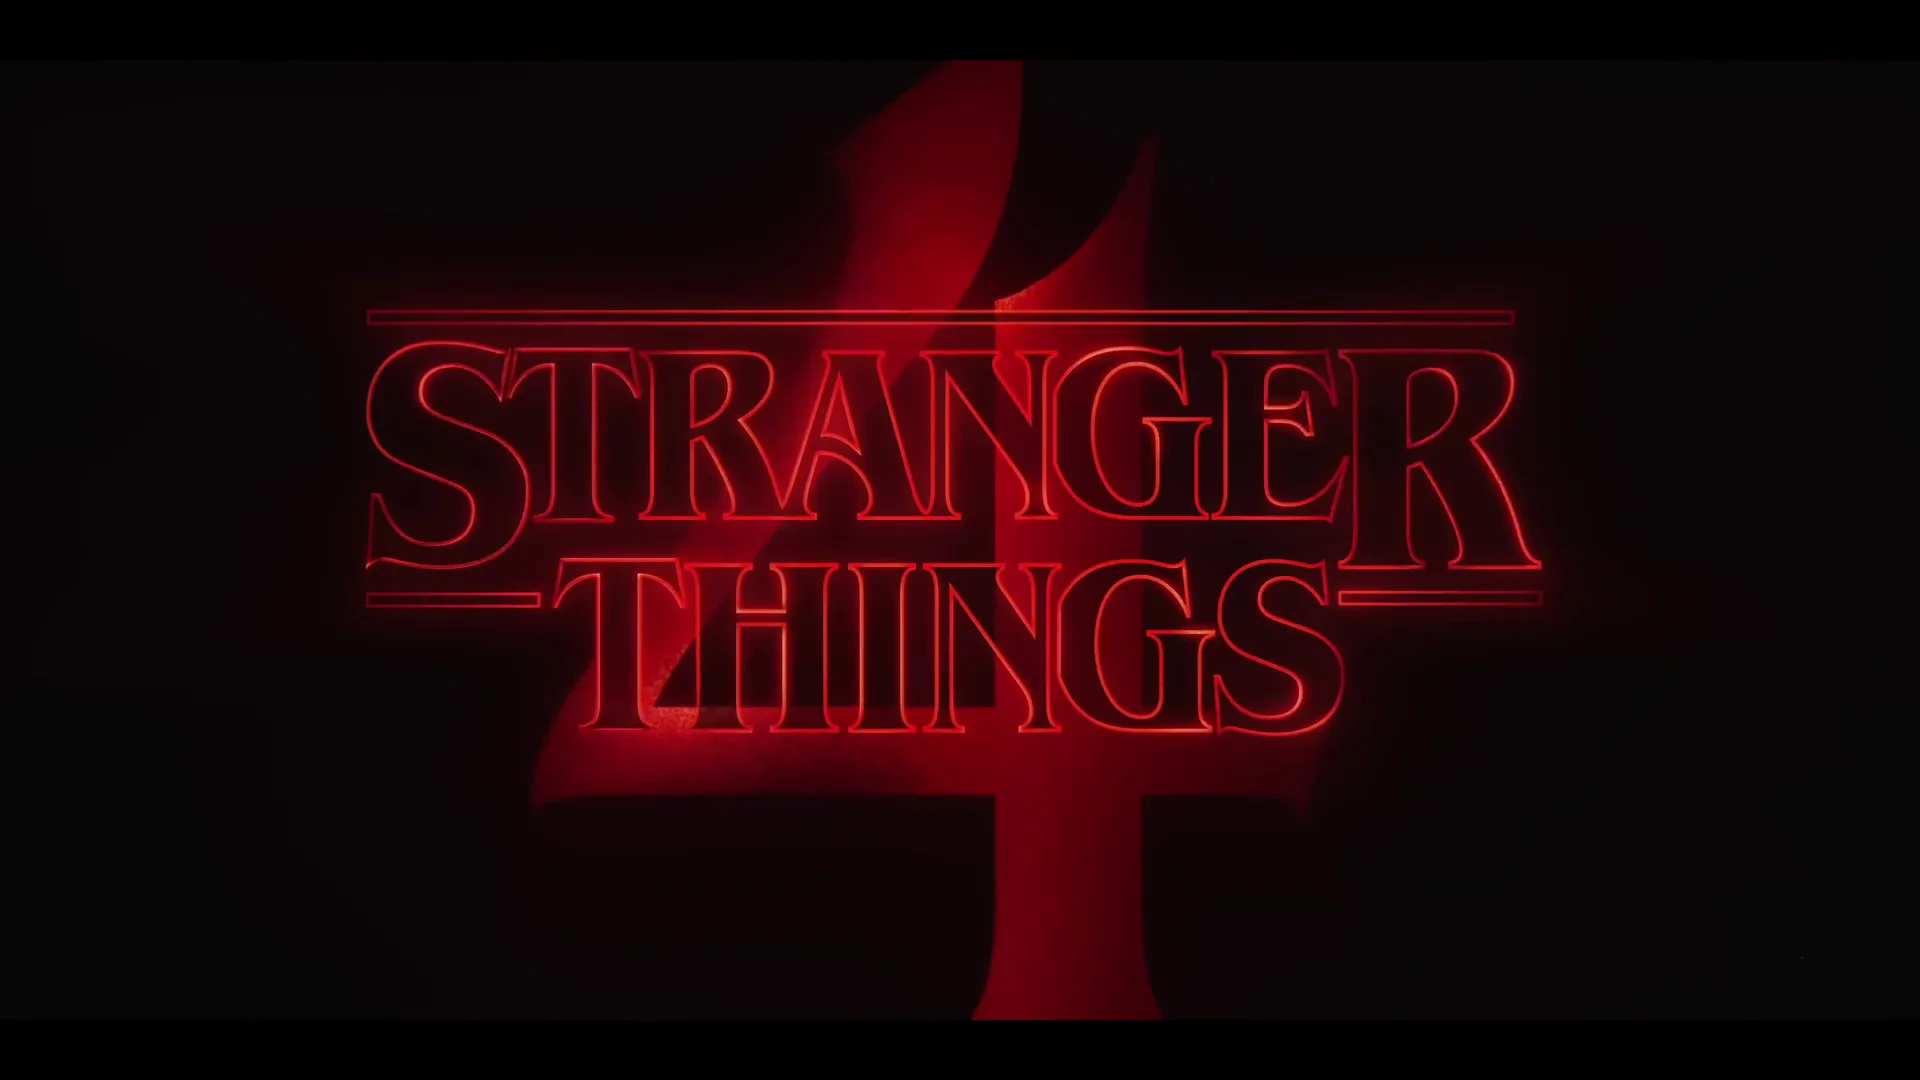 Stranger Things 4, Volume 2 Trailer